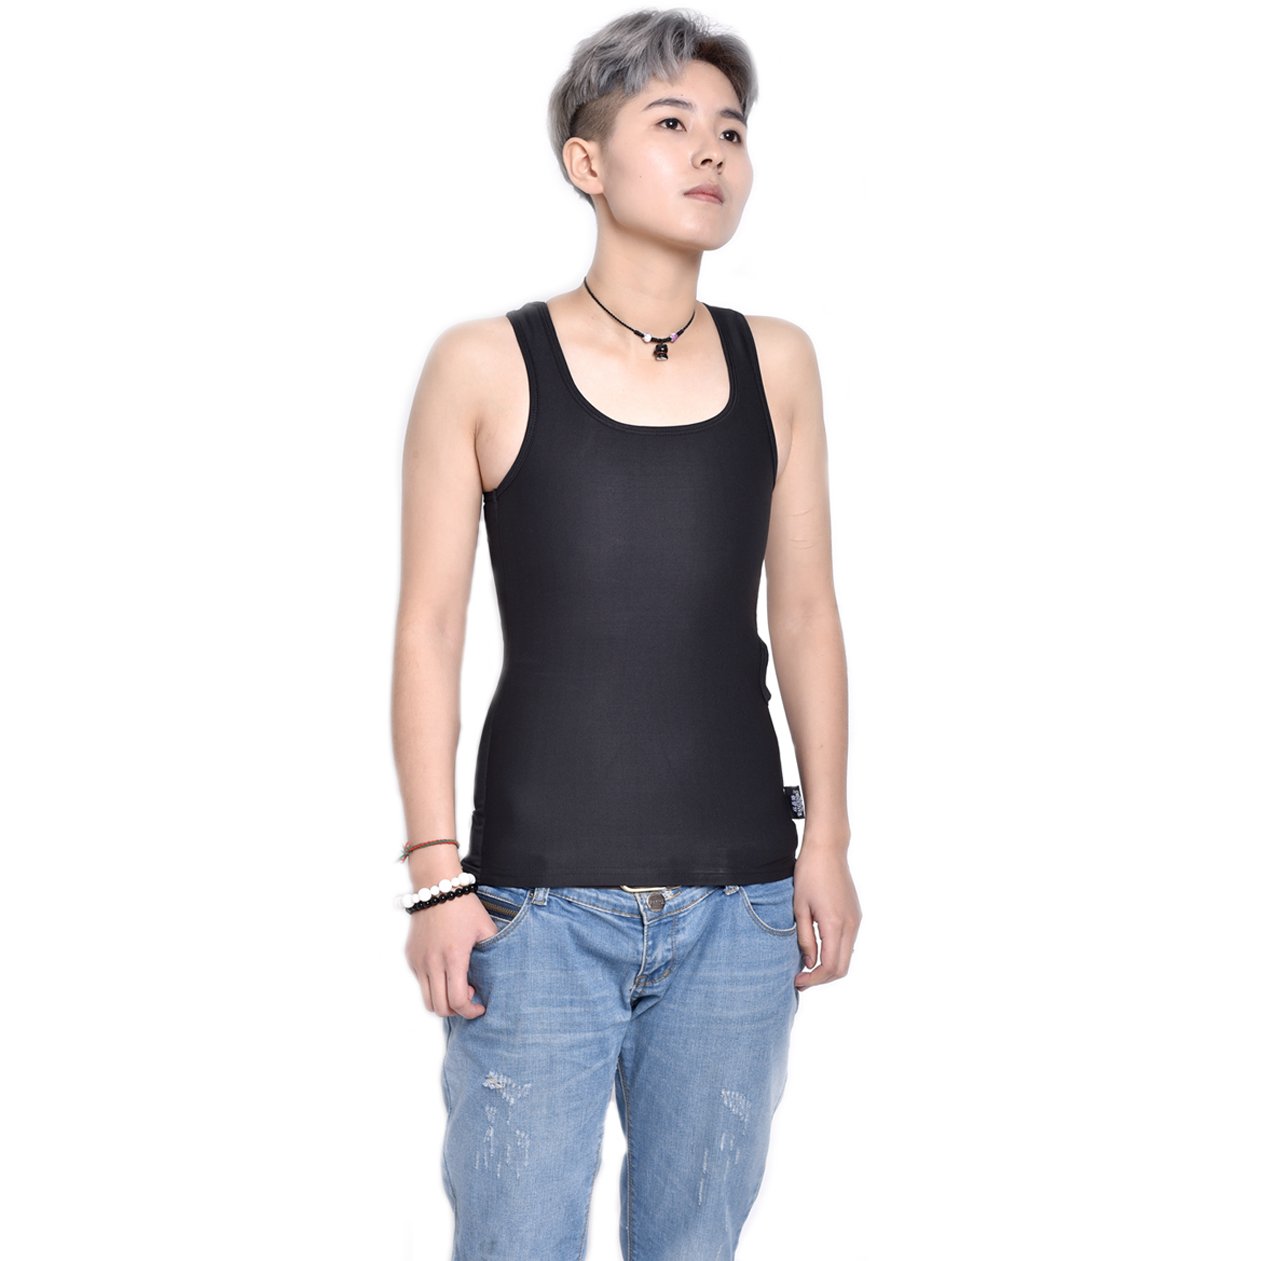 BaronHong Bambuskohle Faser Brust Binder Baumwolle Tank Top für Tomboy Trans Lesben (schwarz, S)